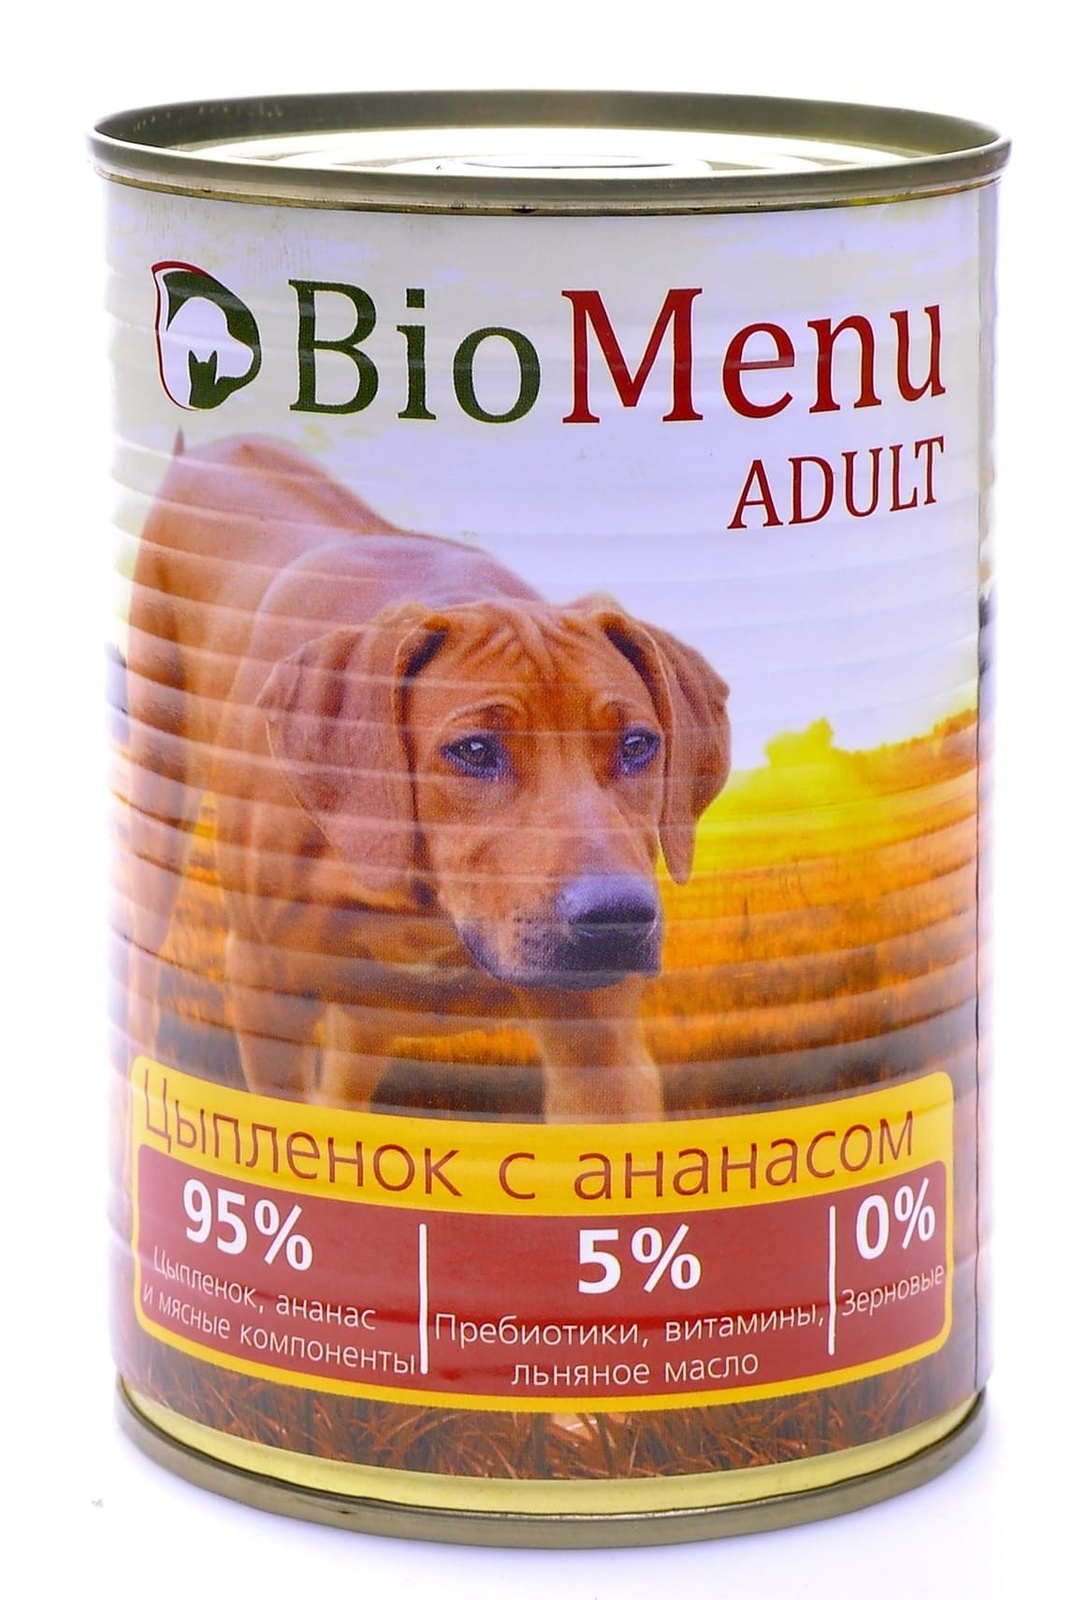 BioMenu BioMenu консервы для собак цыпленок с ананасом (100 г) biomenu biomenu консервы для собак мясное ассорти 100 г